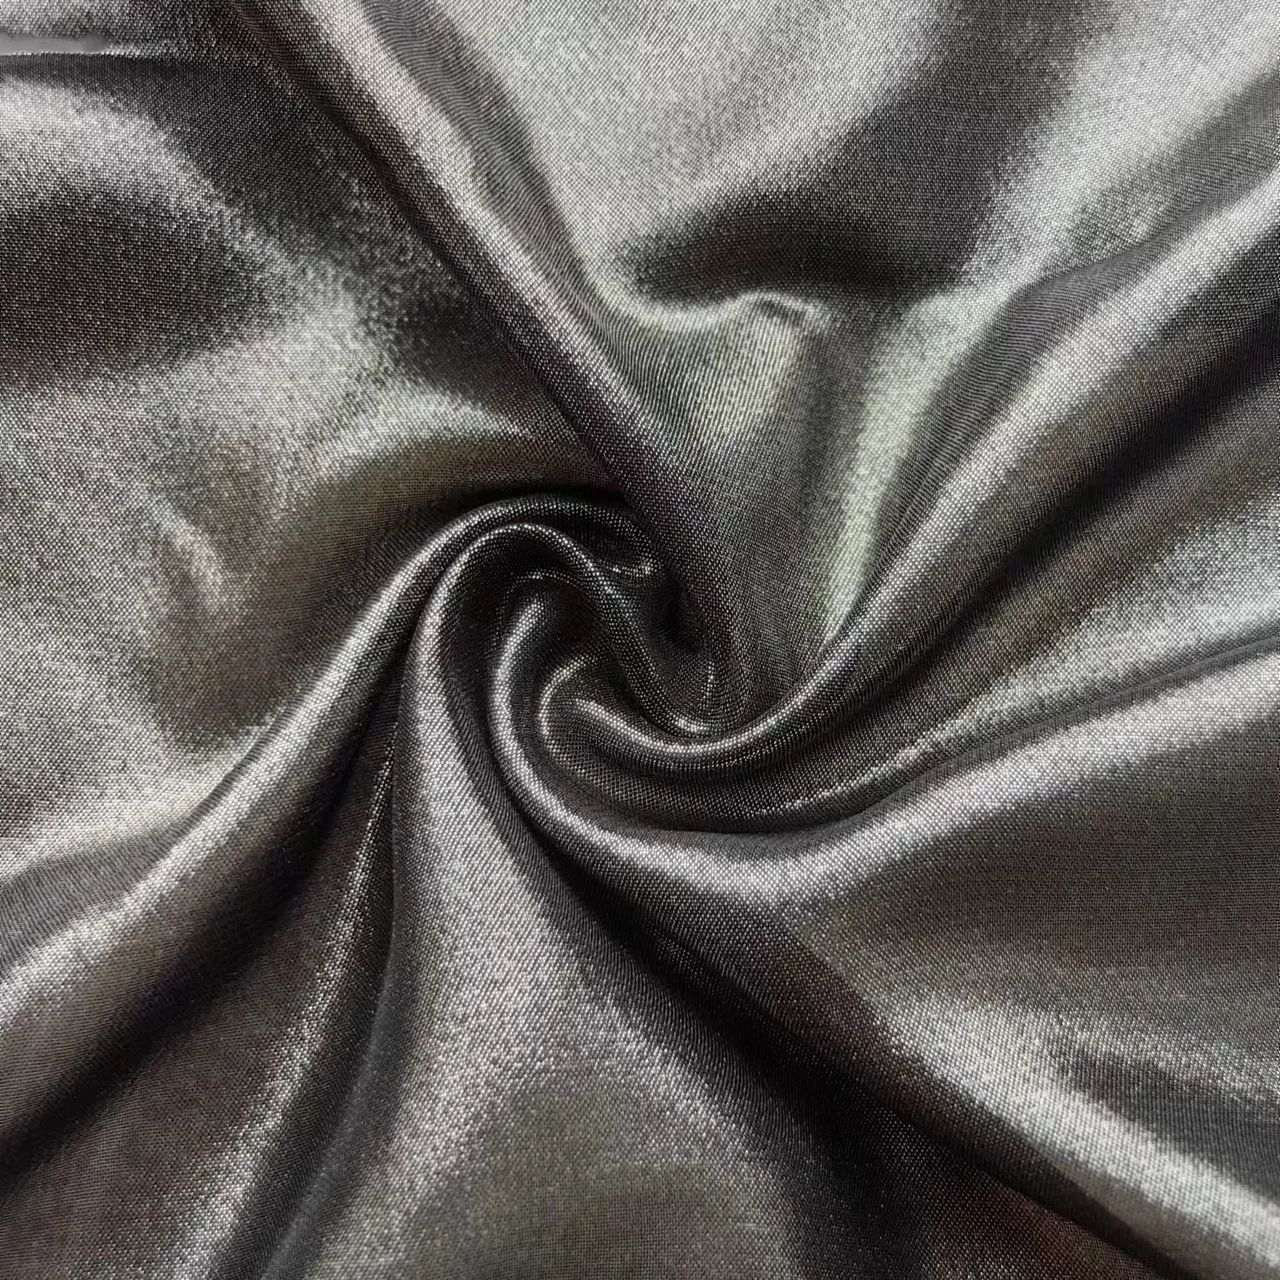 Tessuto chiffon d'argento caldo tessuto chiffon metallico chiffon di qualità nuovi vestiti delle donne di modo vestono campioni gratuiti